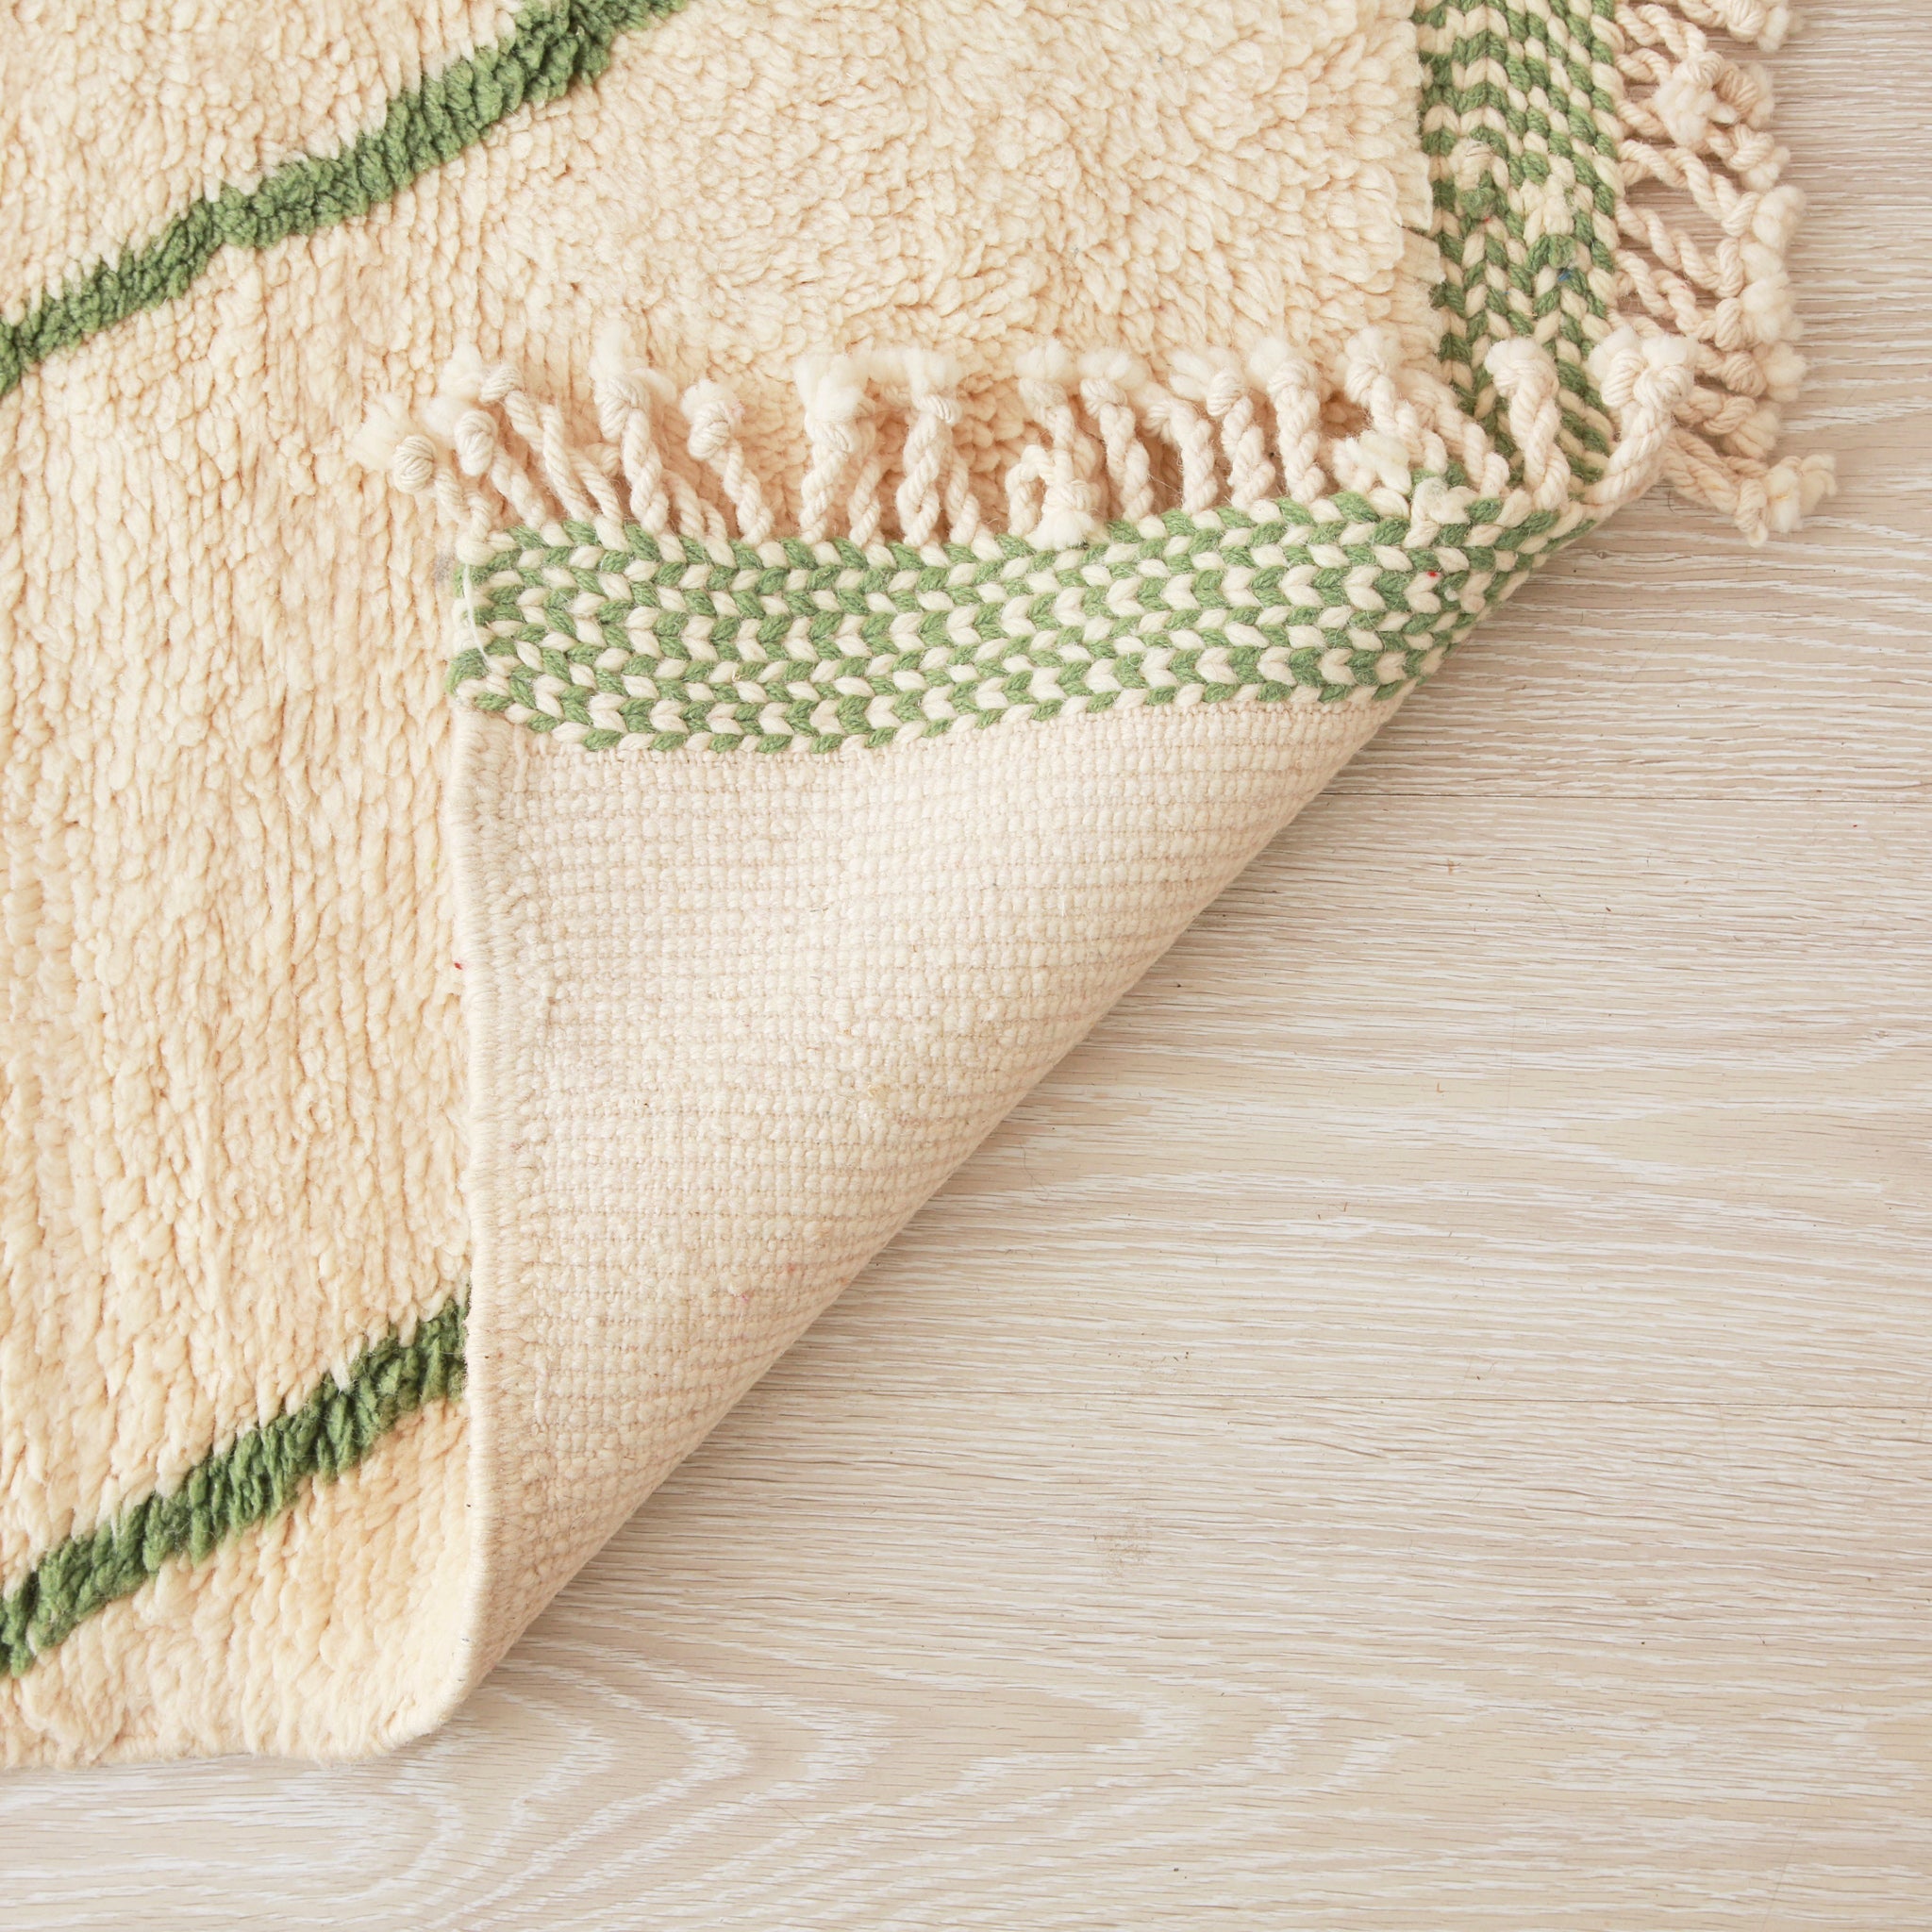 retro di un tappeto beni mrirt con lana bianca  e alcune righe verde. Il bordo della frangia è bianco e verde